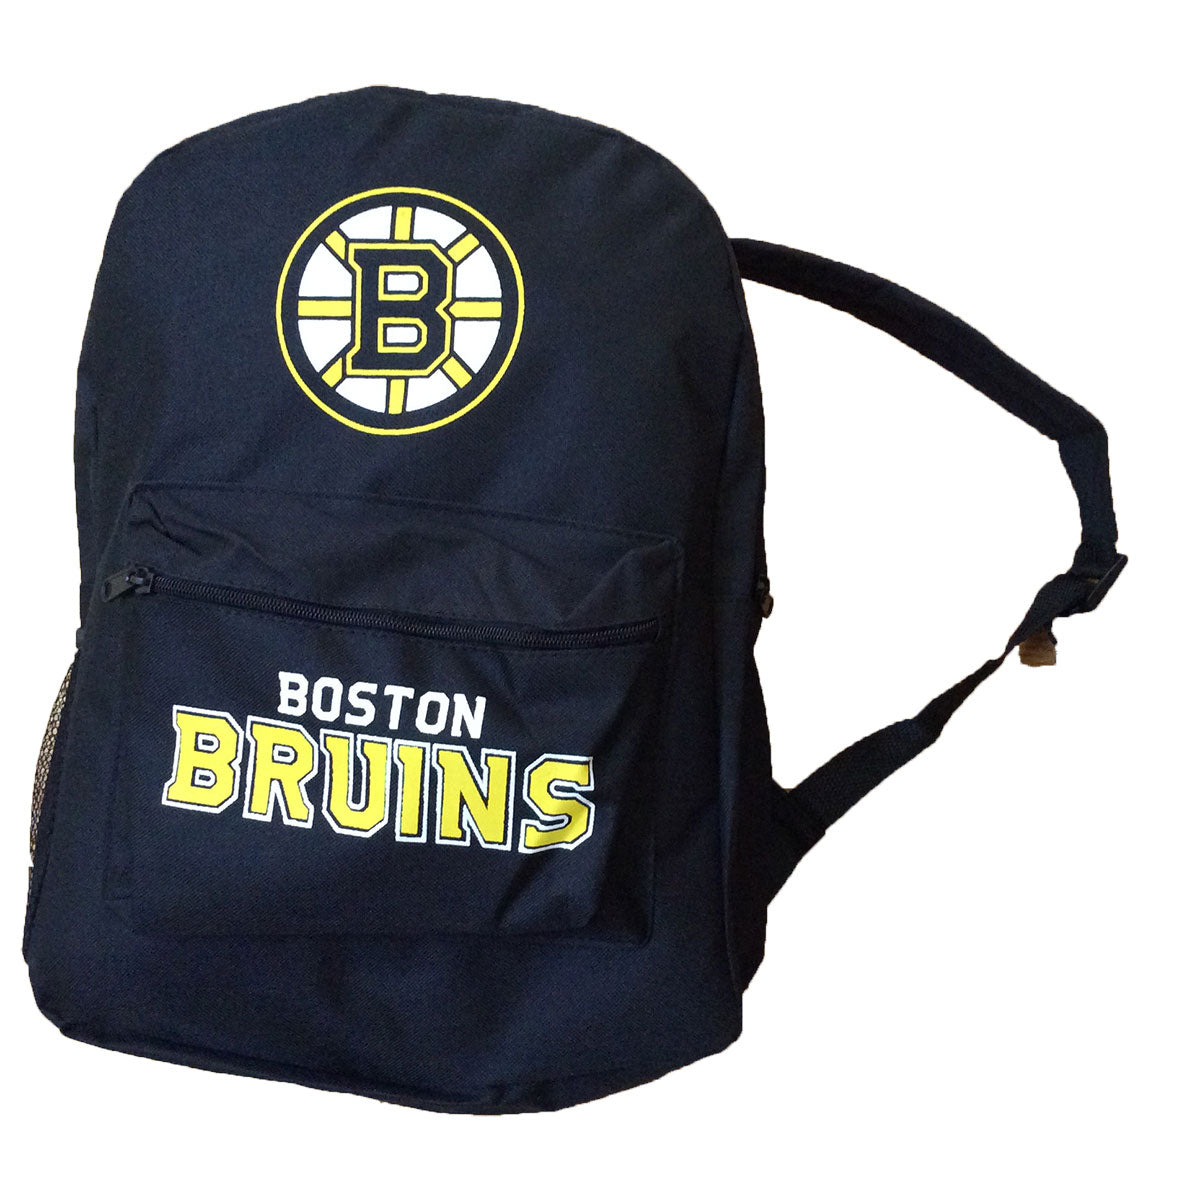 Boston Bruins Napsack